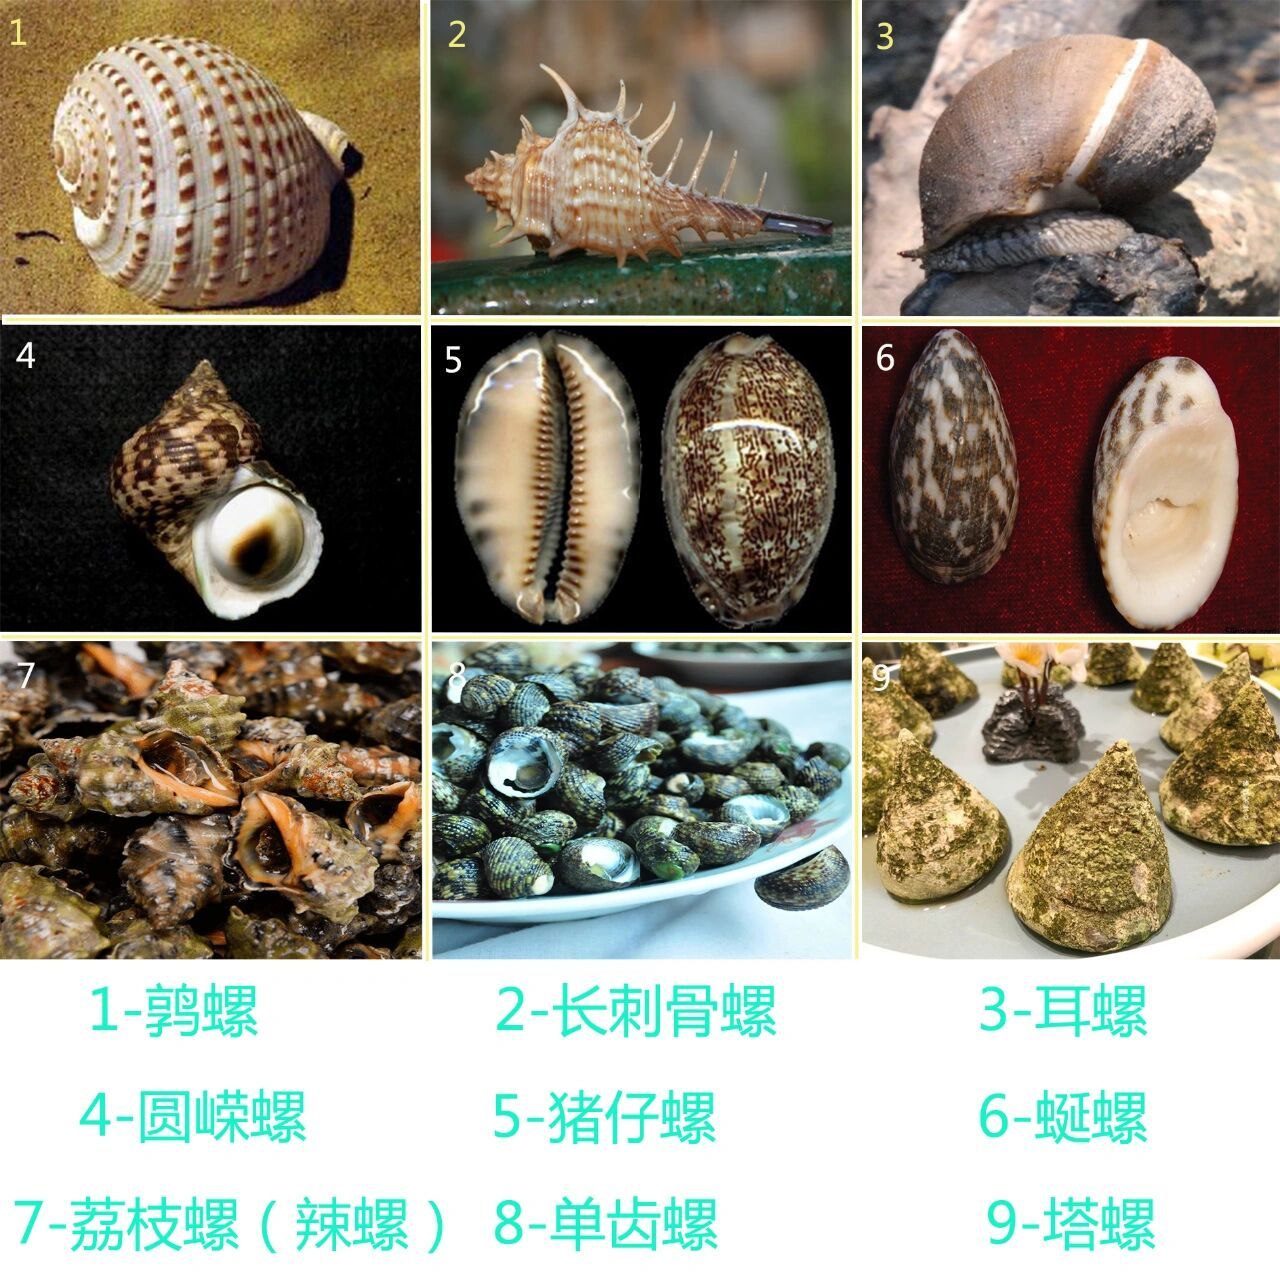 深圳周边赶海或浮潜常见的海螺 记录在深圳惠州赶海经常遇见的一些能